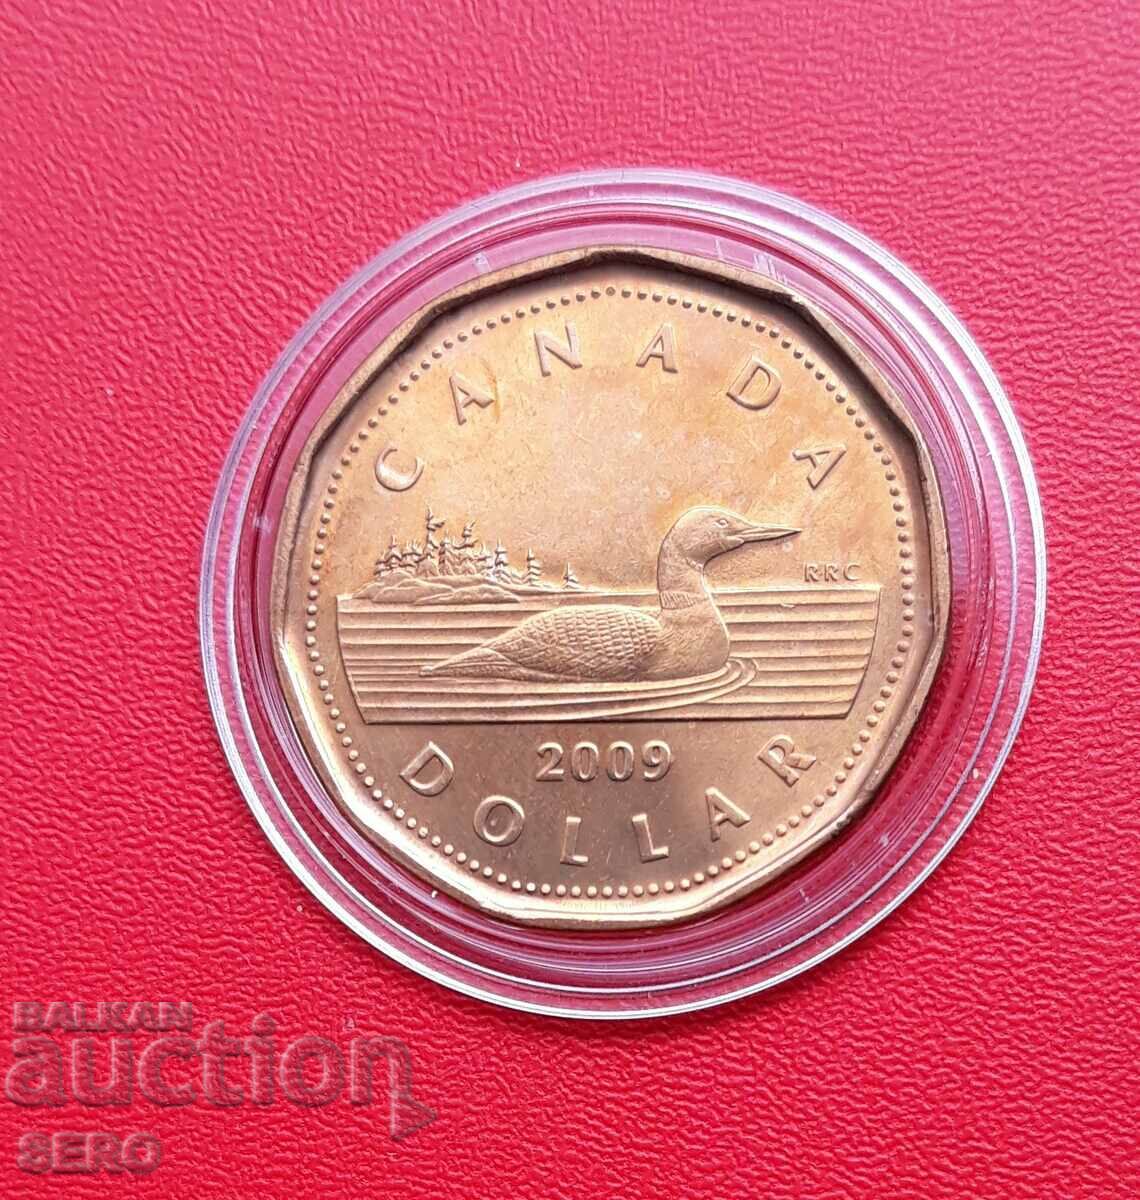 Canada-1 dollar 2009